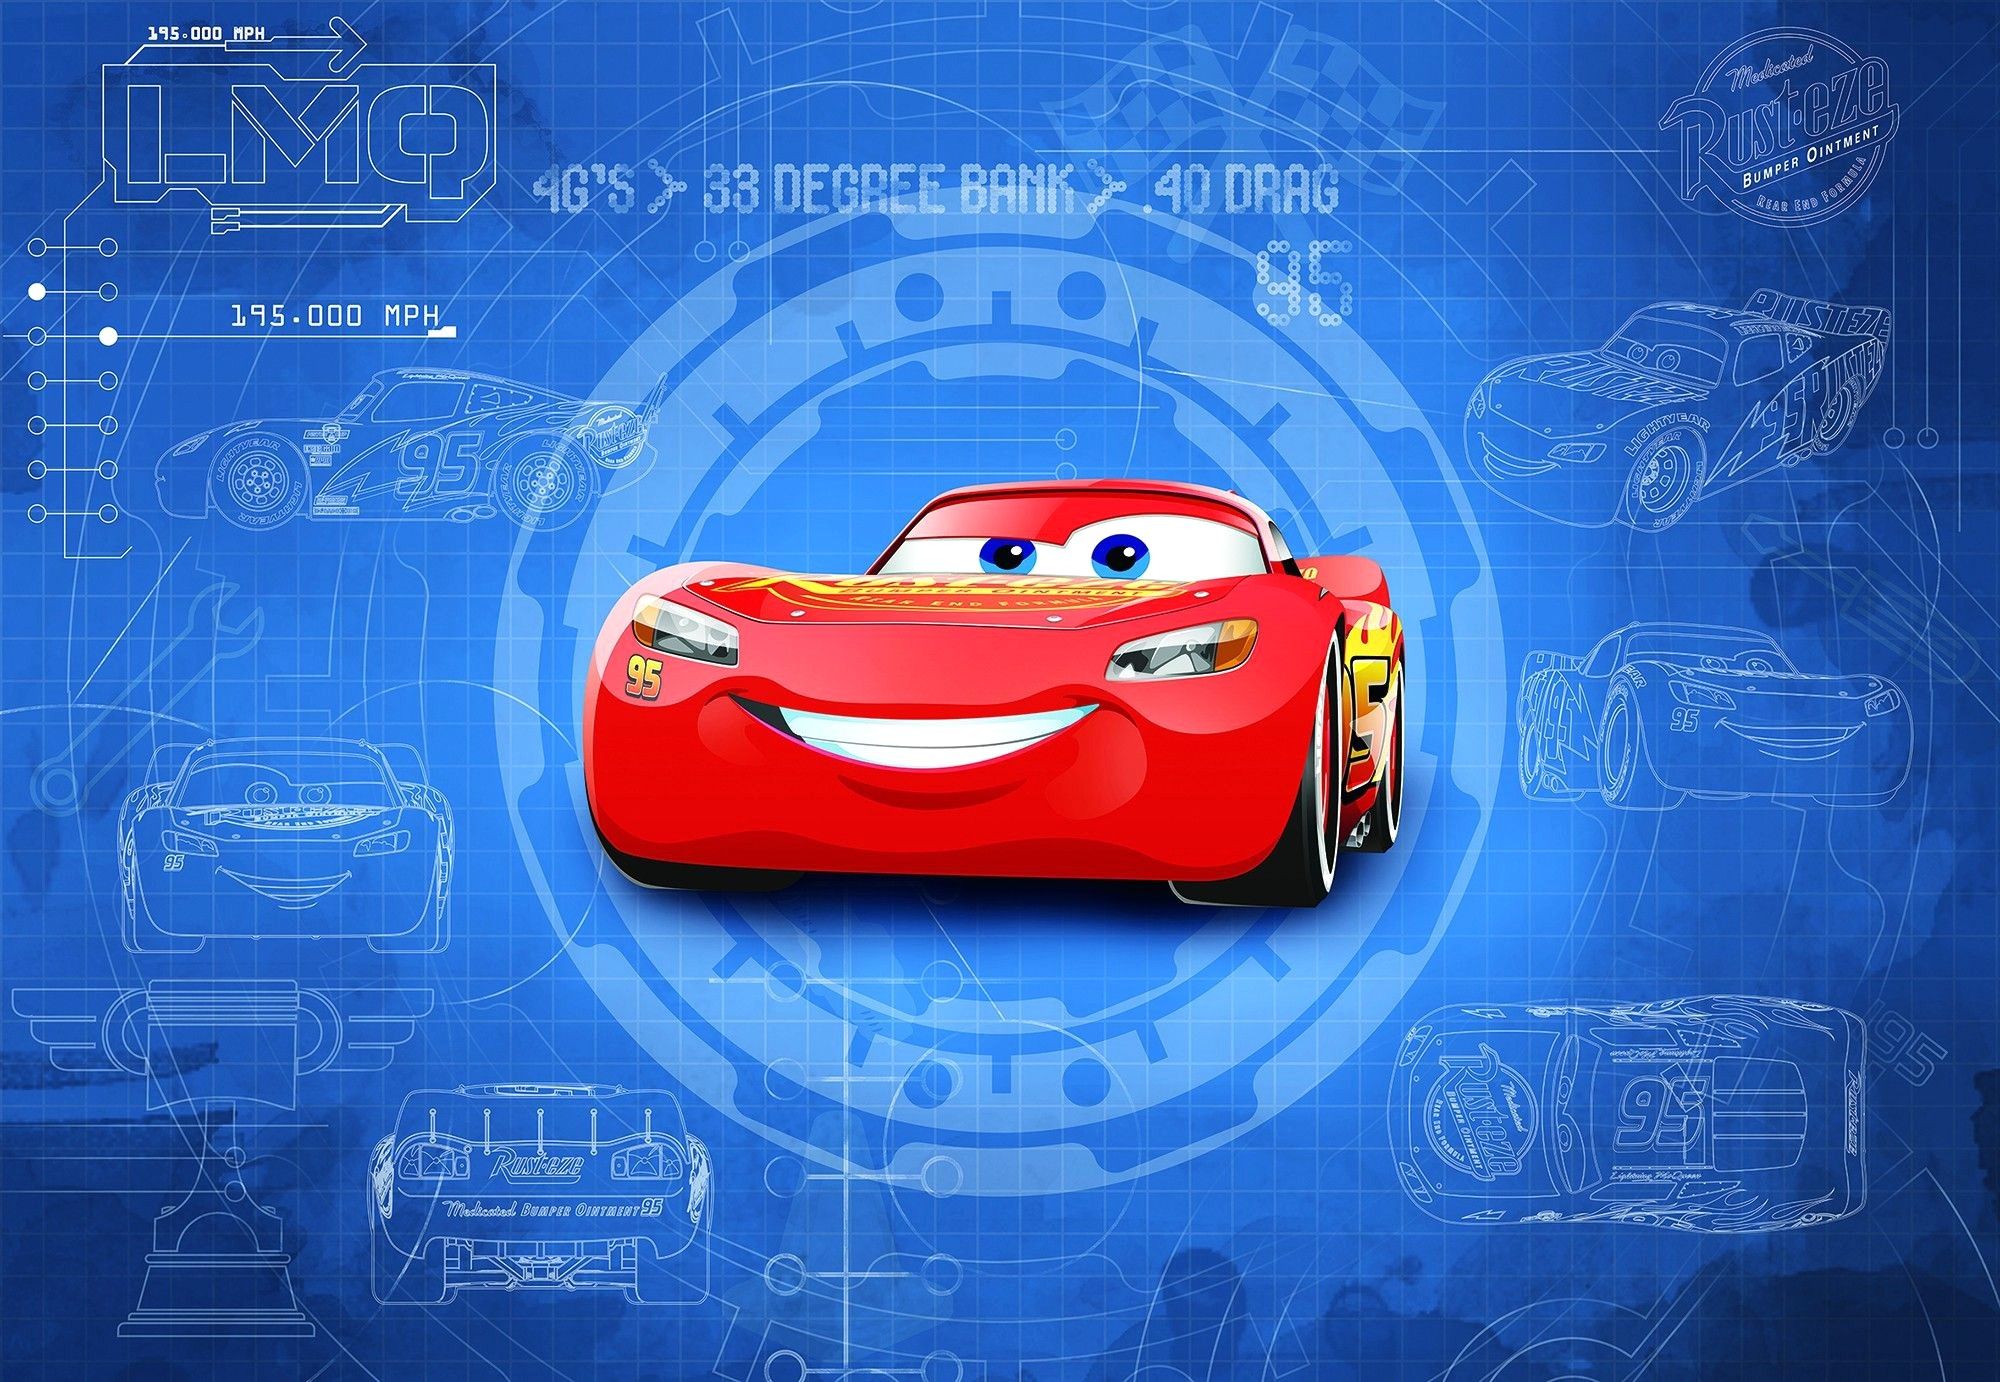 Pixar Cars Wallpaper Free Pixar Cars Background